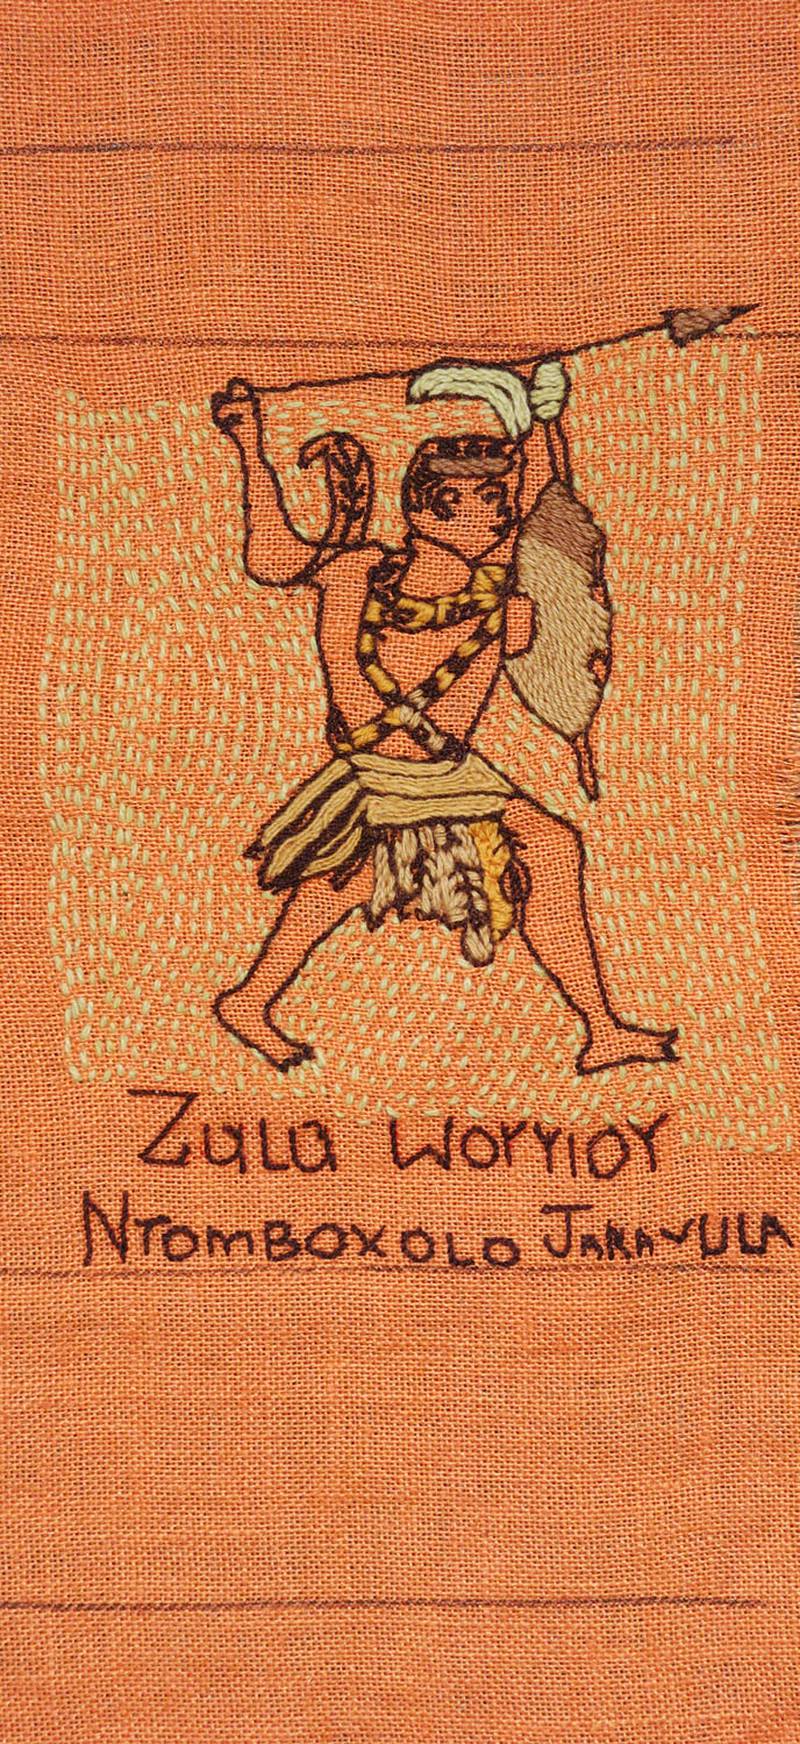 An image of a Zulu warrior by Ntomboxolo Jaravula.